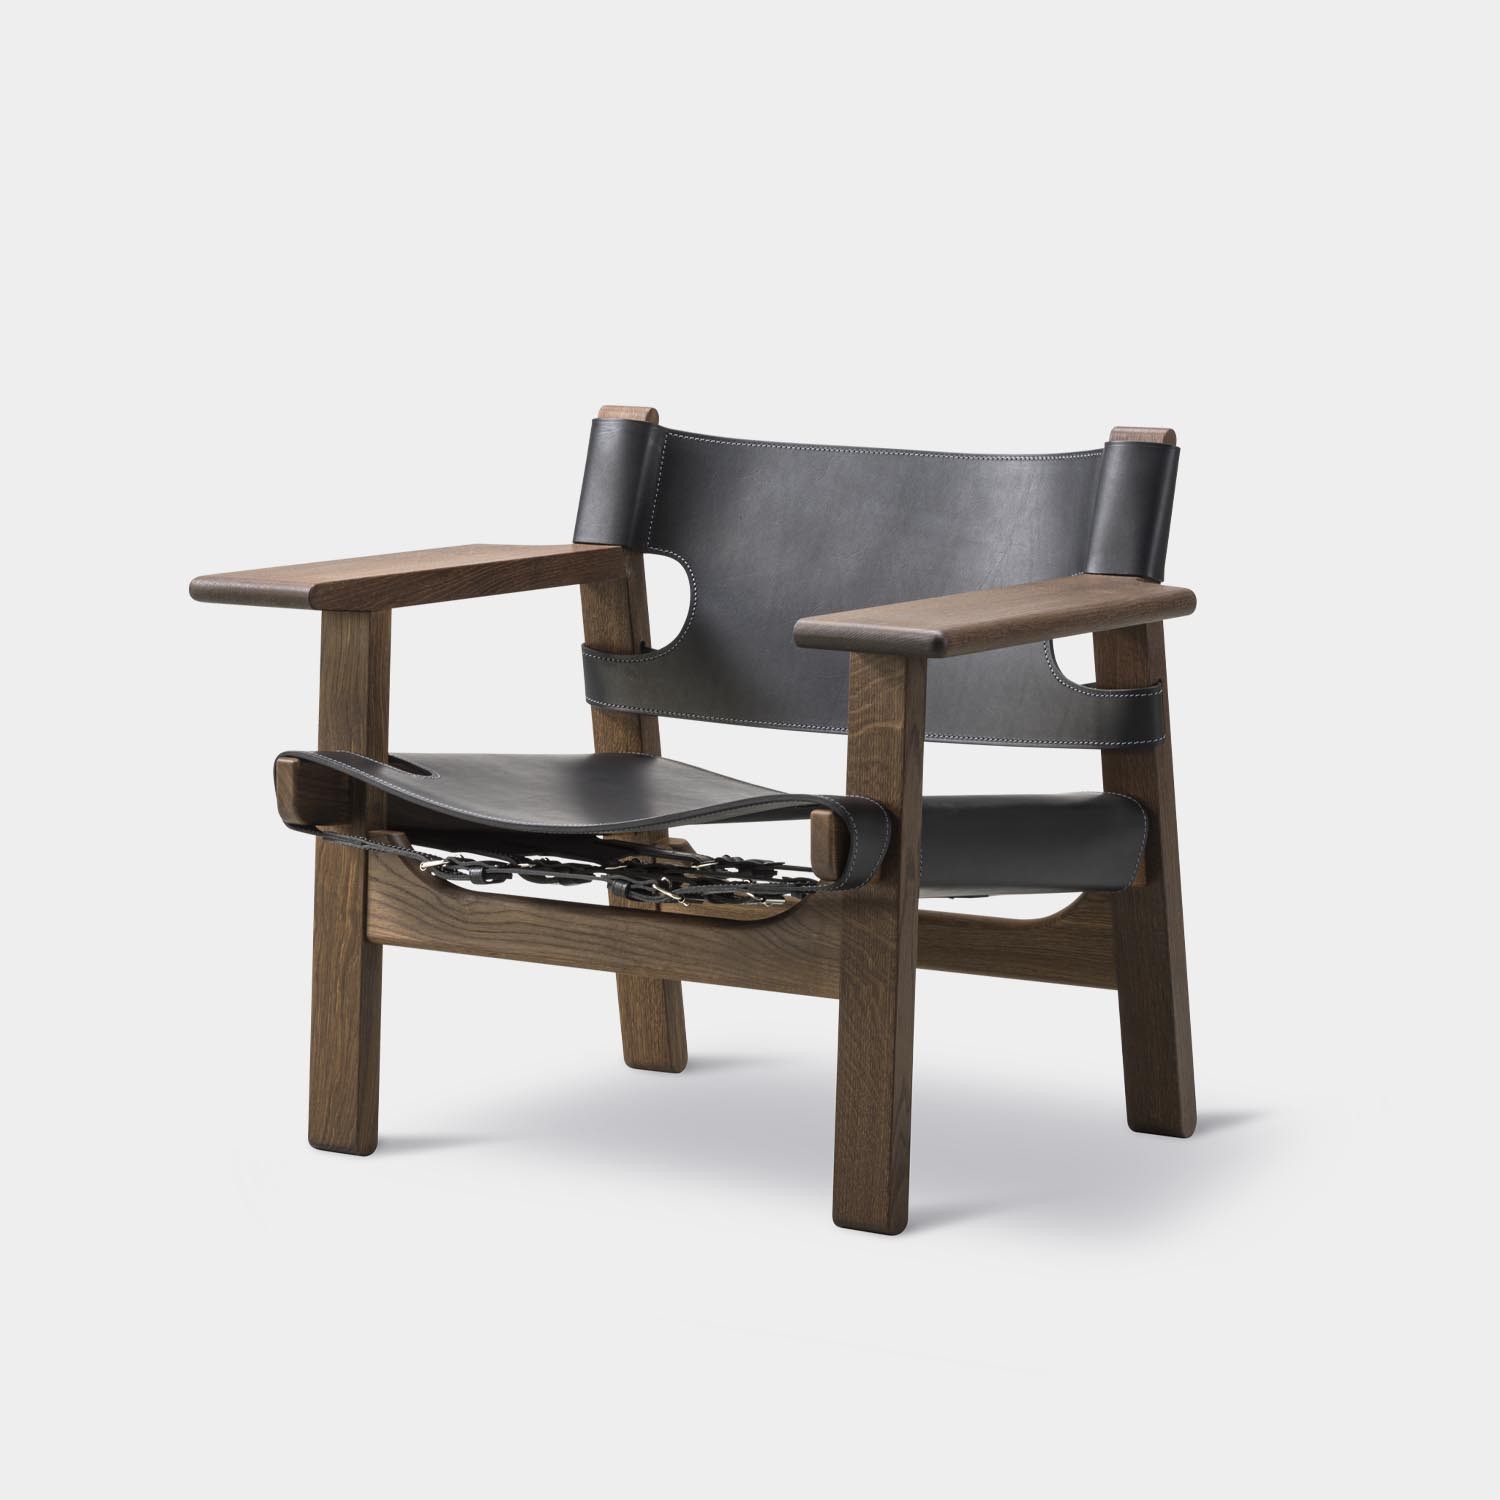 Spanish Chair, Smoked Oak